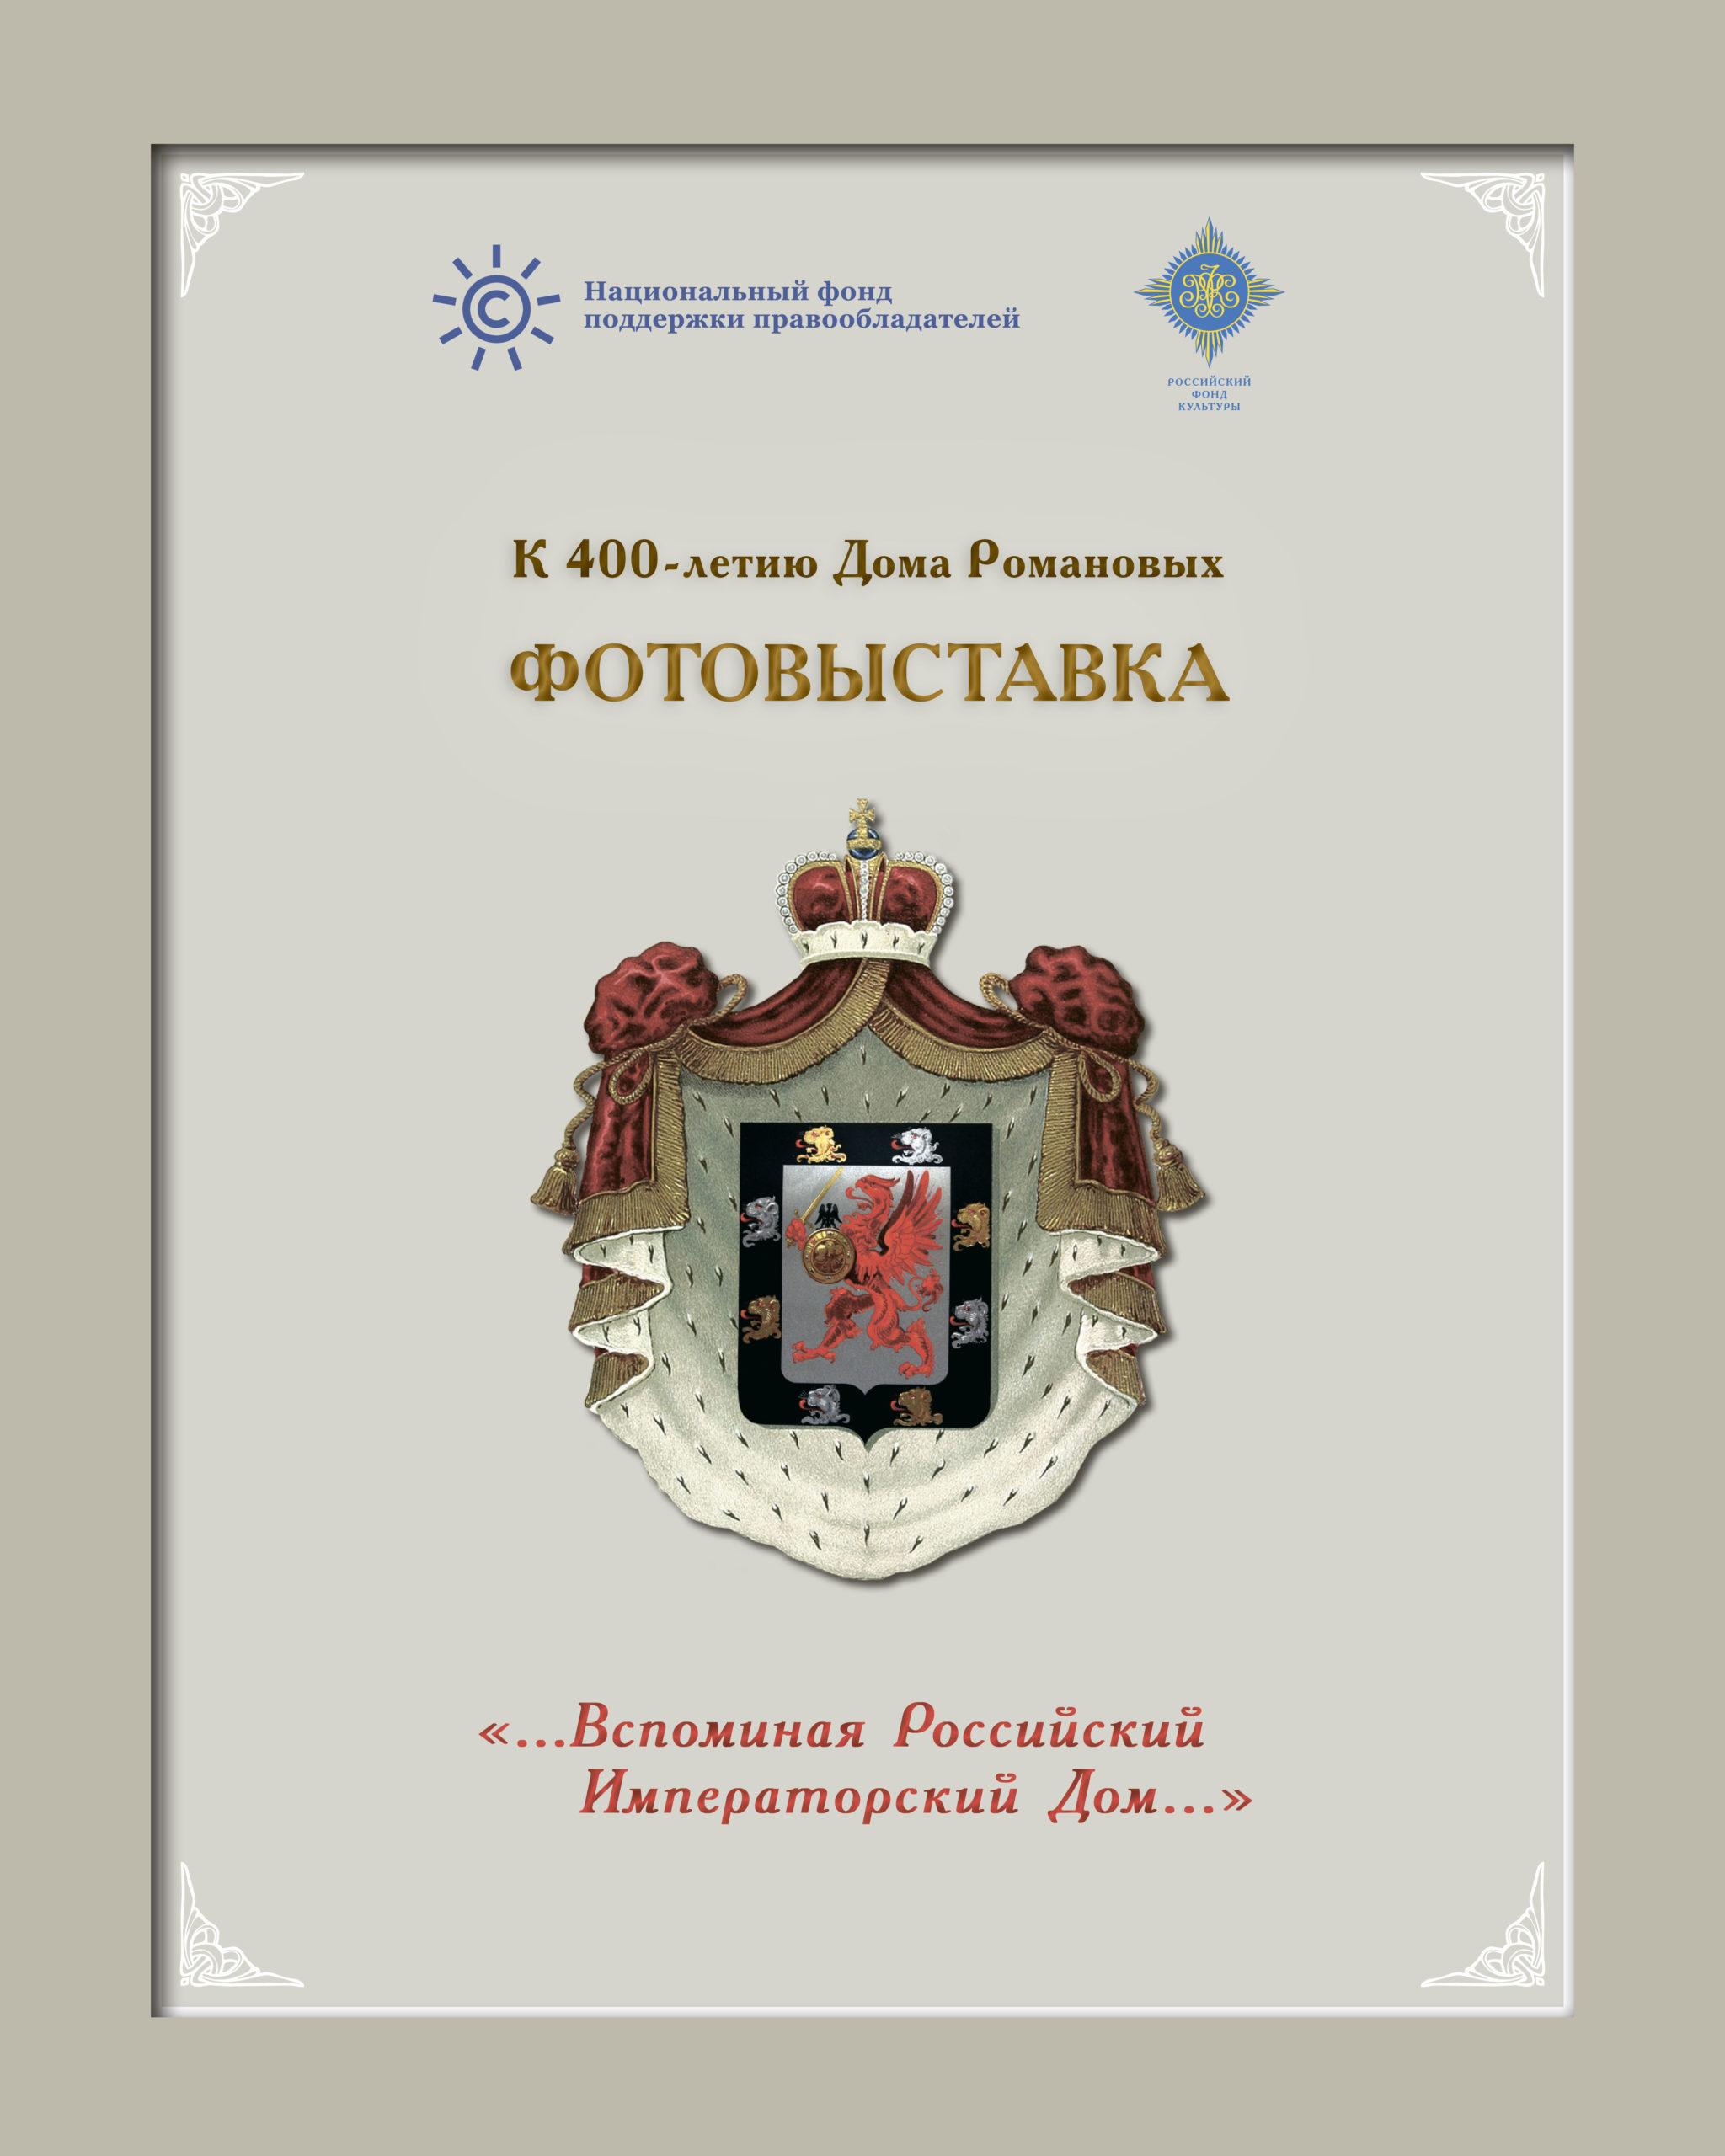 Открытие фотовыставки к 400-летию Дома Романовых в Костроме